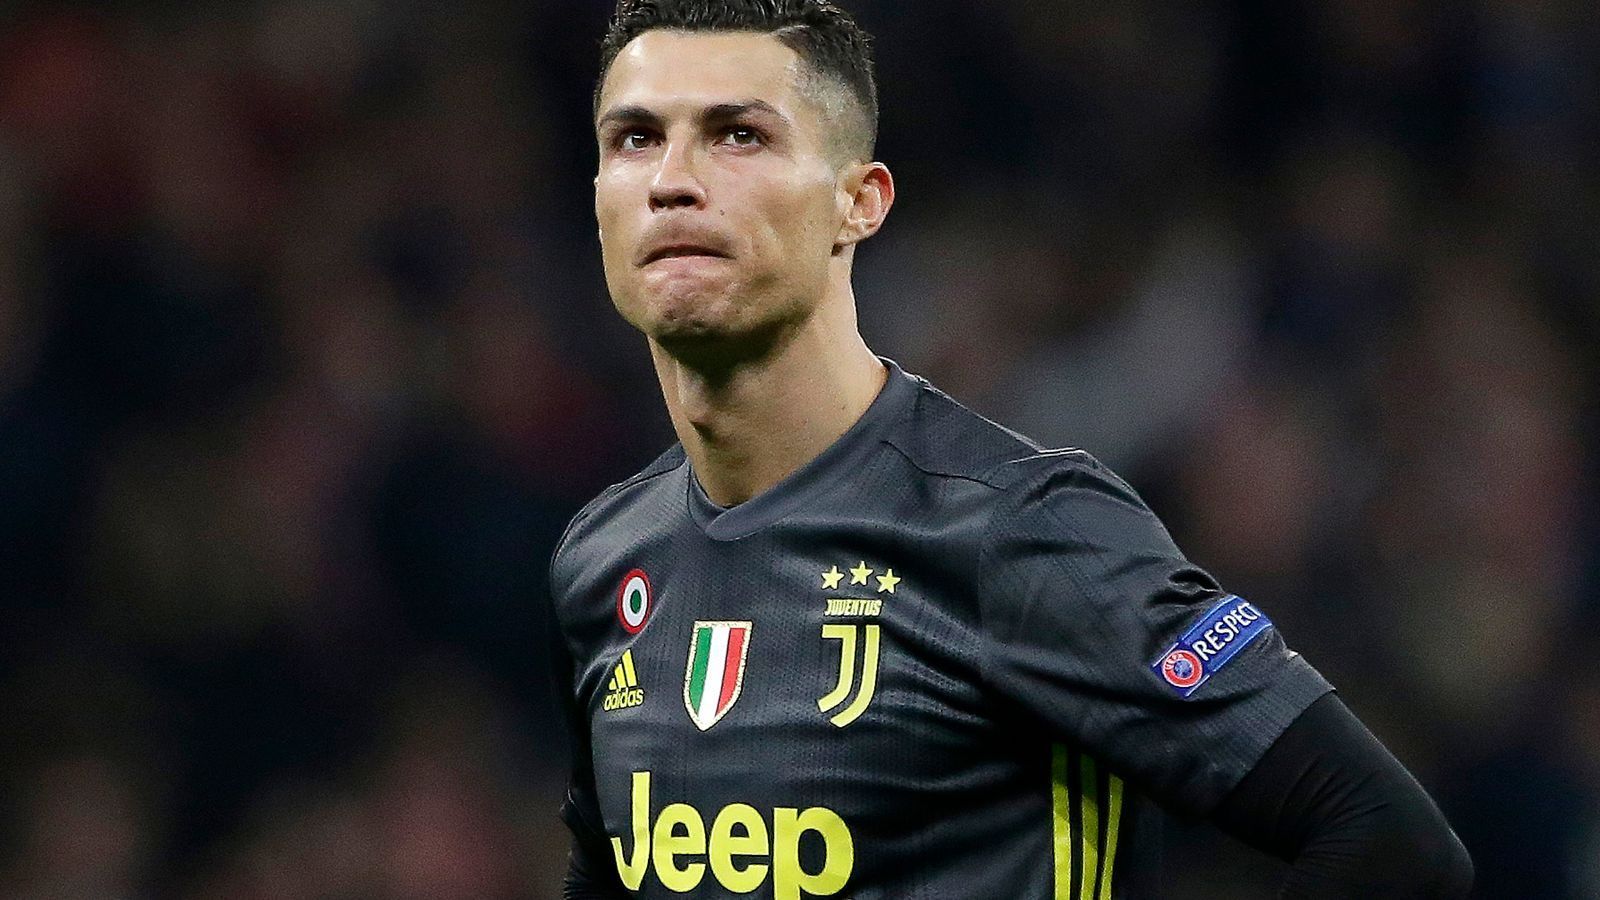 
                <strong>Juventus Turin (Italien)</strong><br>
                Cristiano Ronaldo und seine Juve-Kollegen laufen mit dem Schriftzug des Auto-Herstellers Jeep, zugehörig zum Fiat-Konzern, auf der Brust auf das Spielfeld. Laut offiziellen Angaben fließen dafür 35 Milllionen pro Jahr in die Kassen des italienischen Serienmeisters. 
              